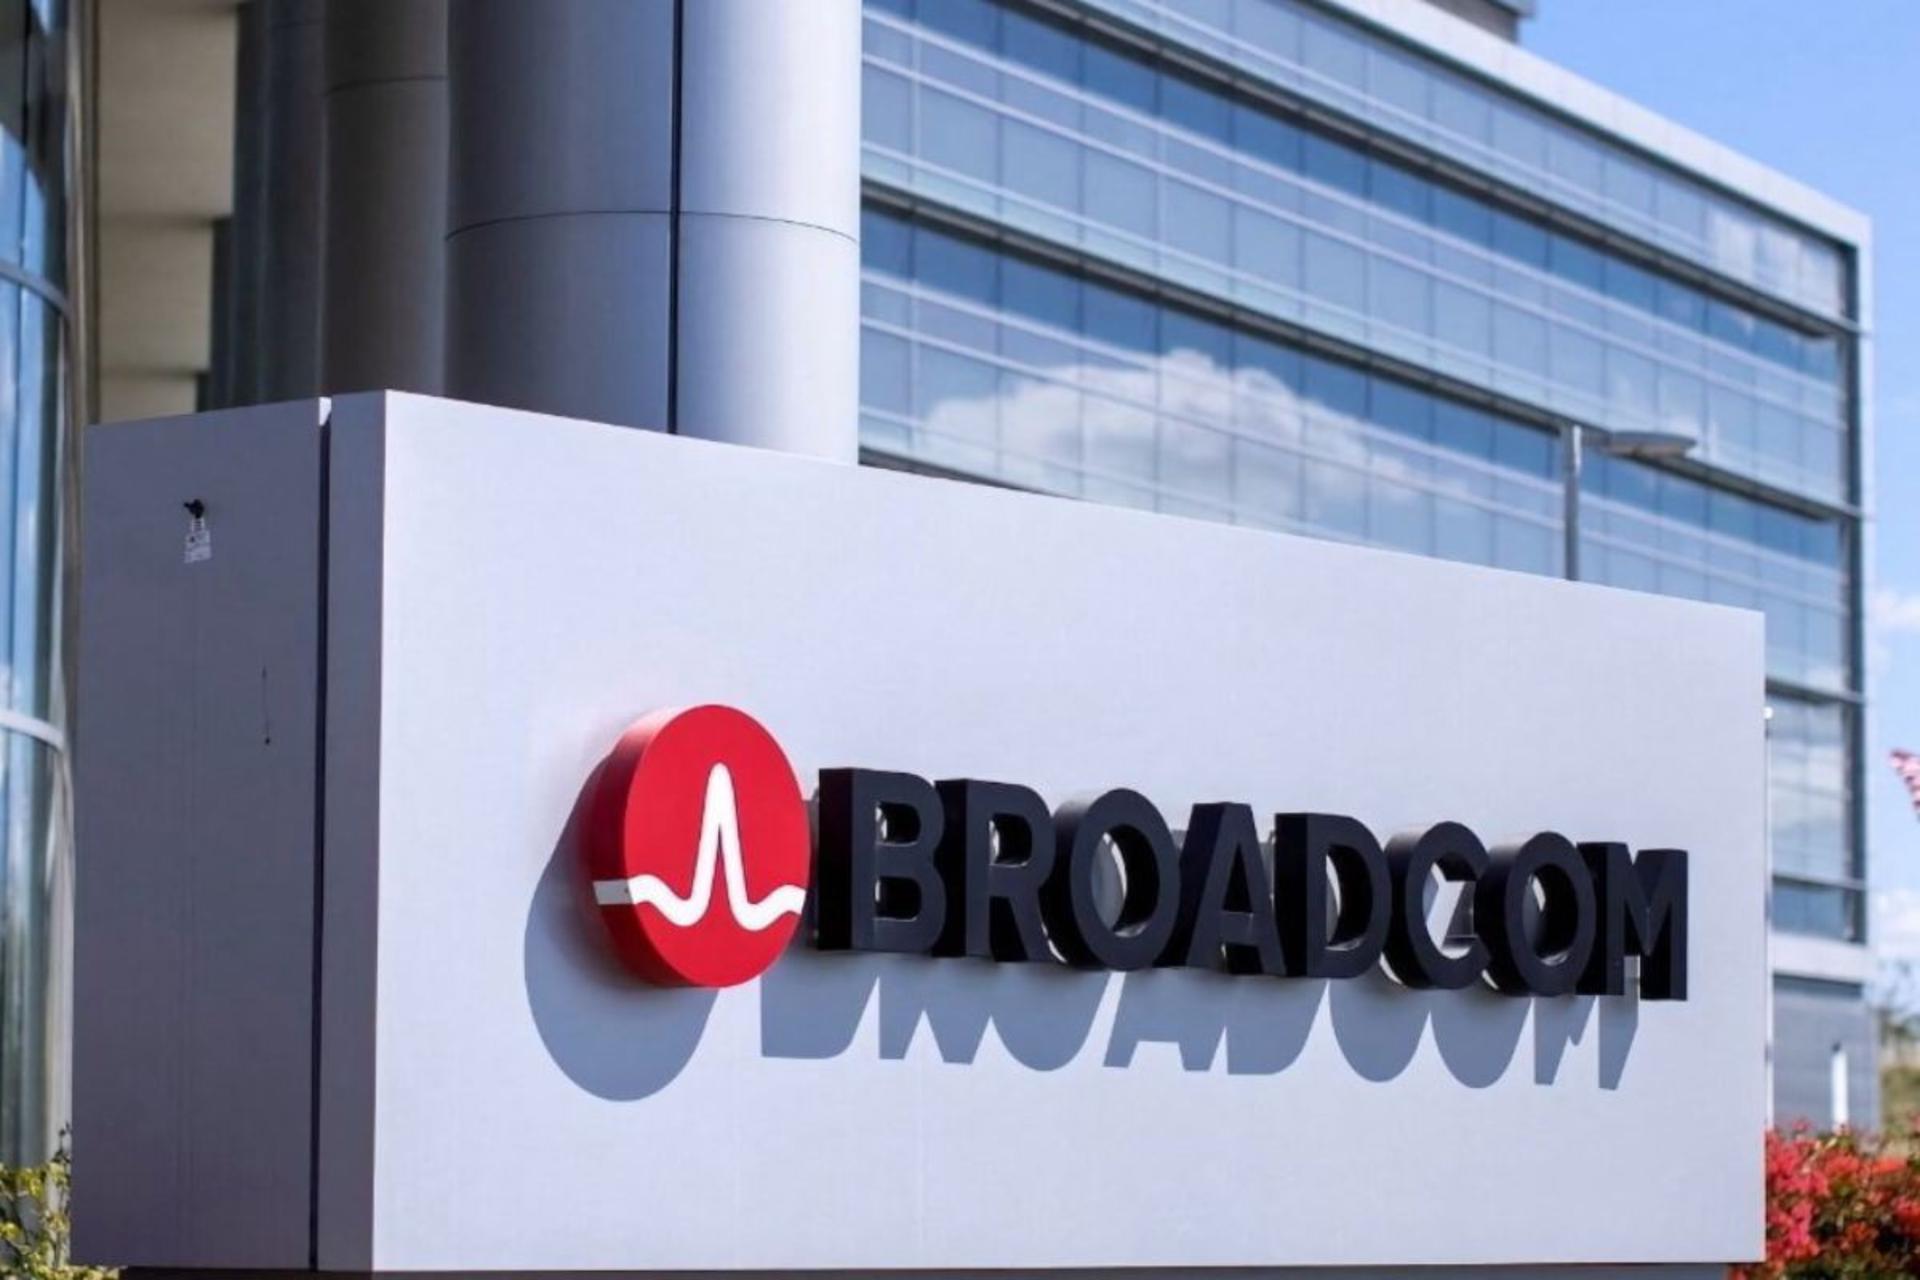 مرجع متخصصين ايران برودكام | Broadcom